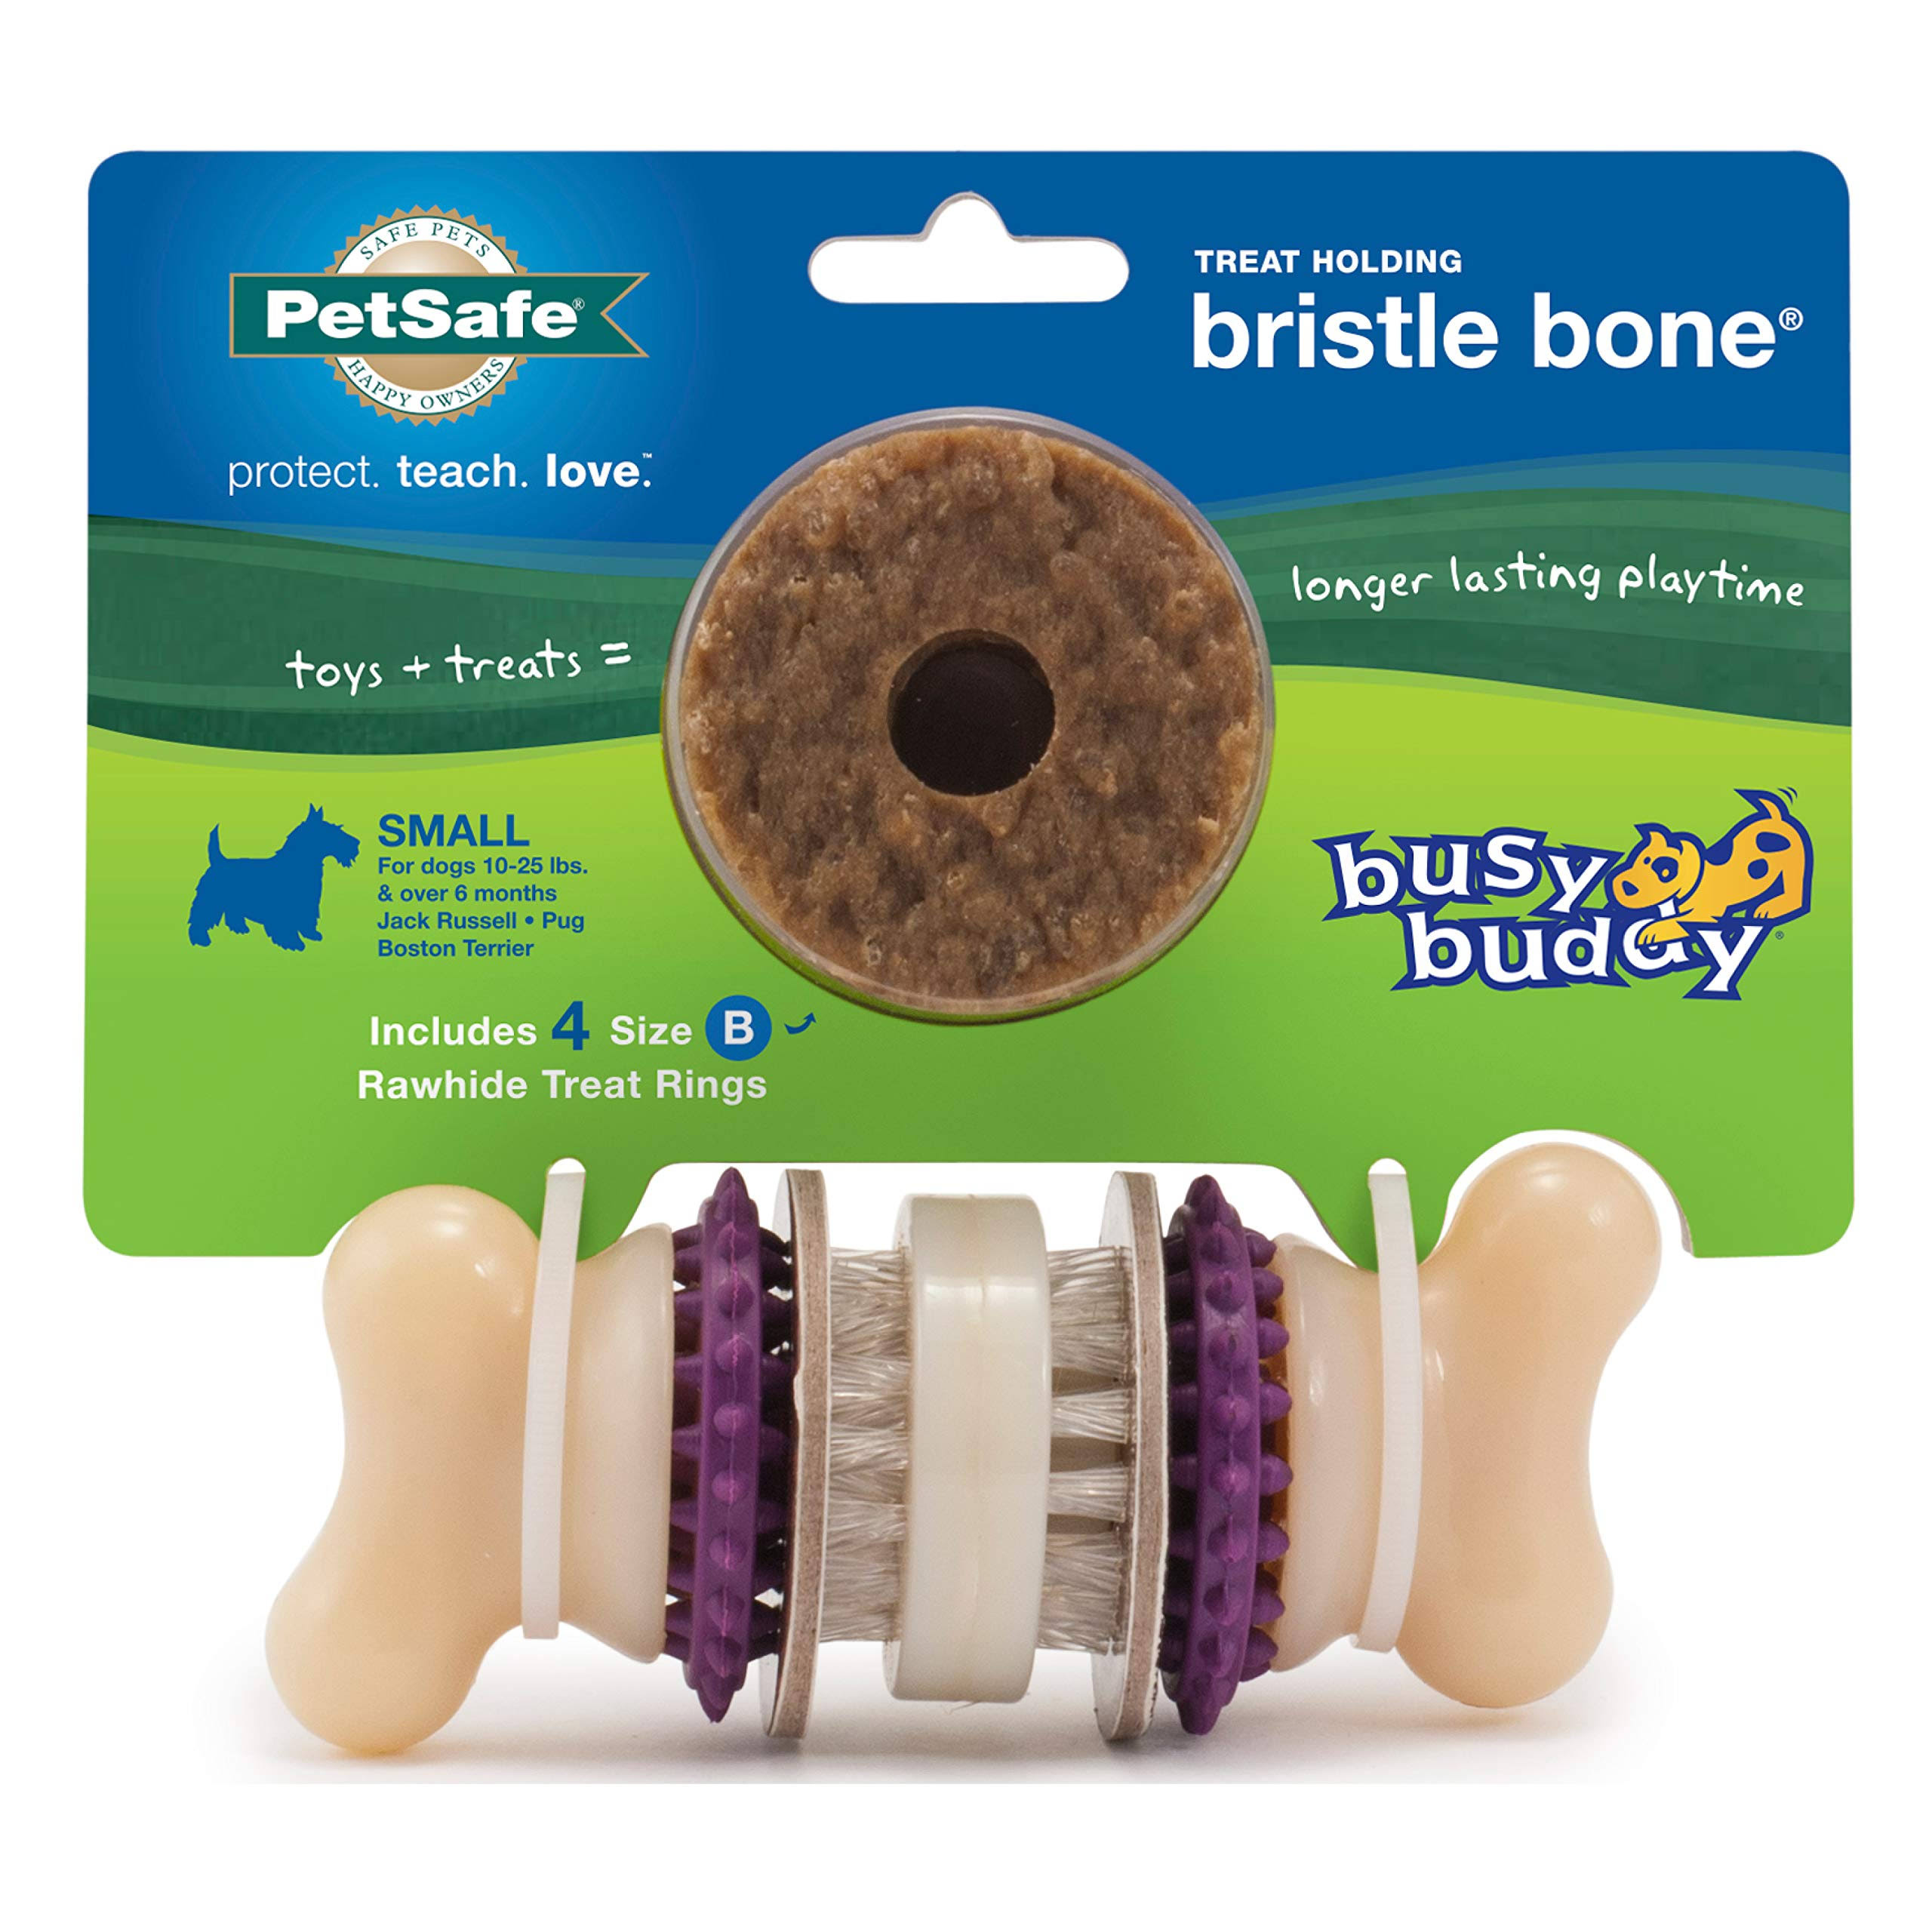 PetSafe Busy Buddy Bristle Bone Dog Toy - Small